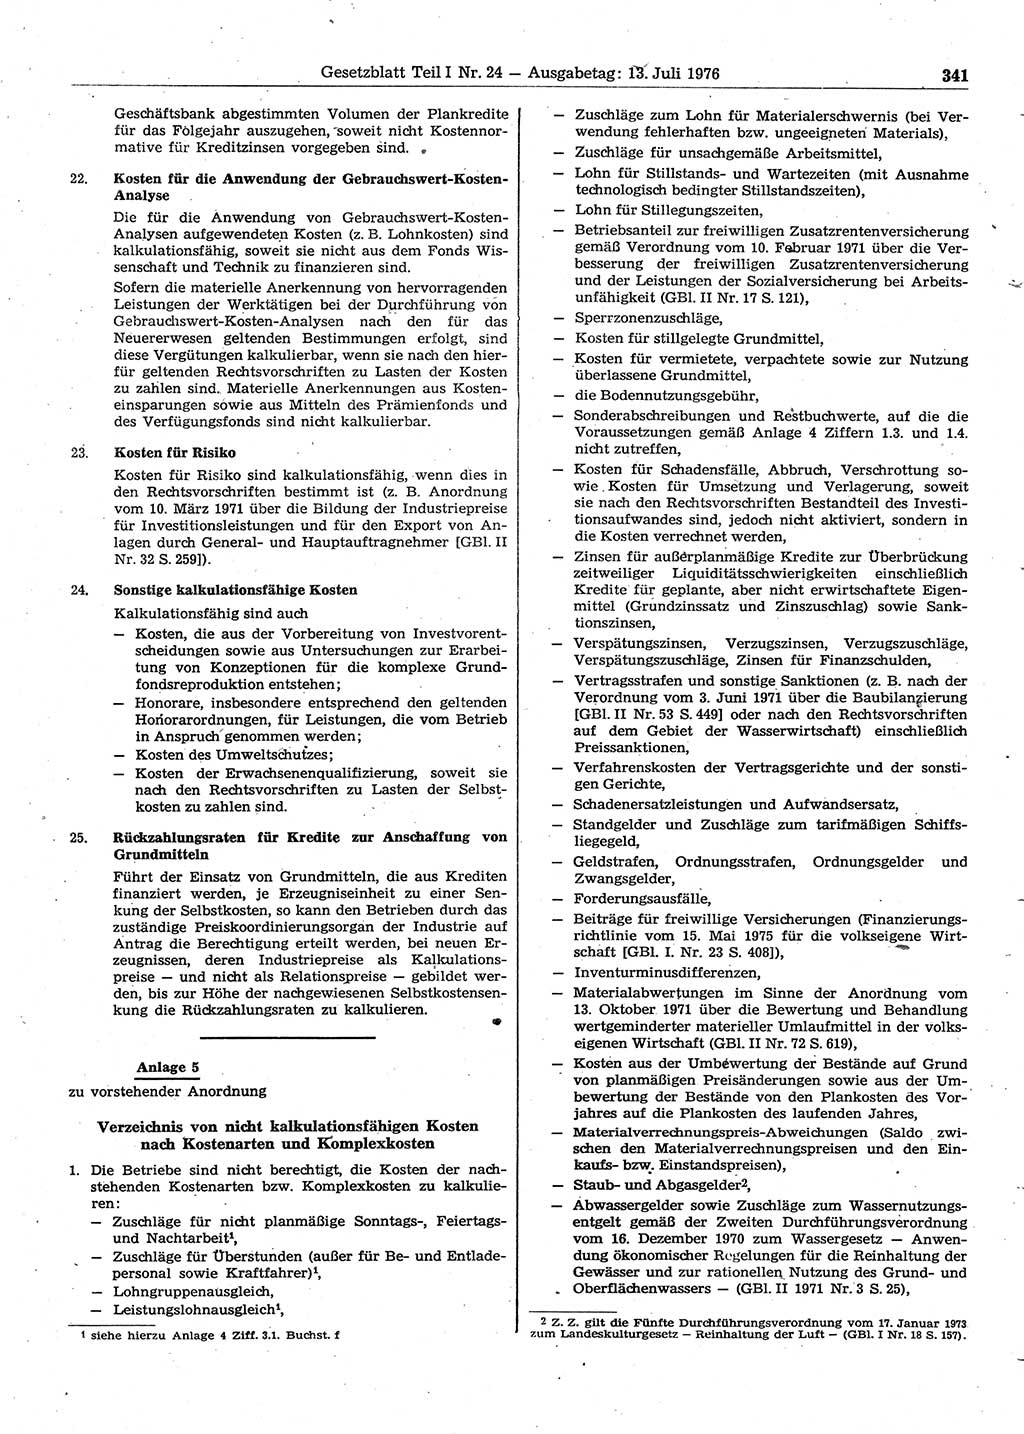 Gesetzblatt (GBl.) der Deutschen Demokratischen Republik (DDR) Teil Ⅰ 1976, Seite 341 (GBl. DDR Ⅰ 1976, S. 341)